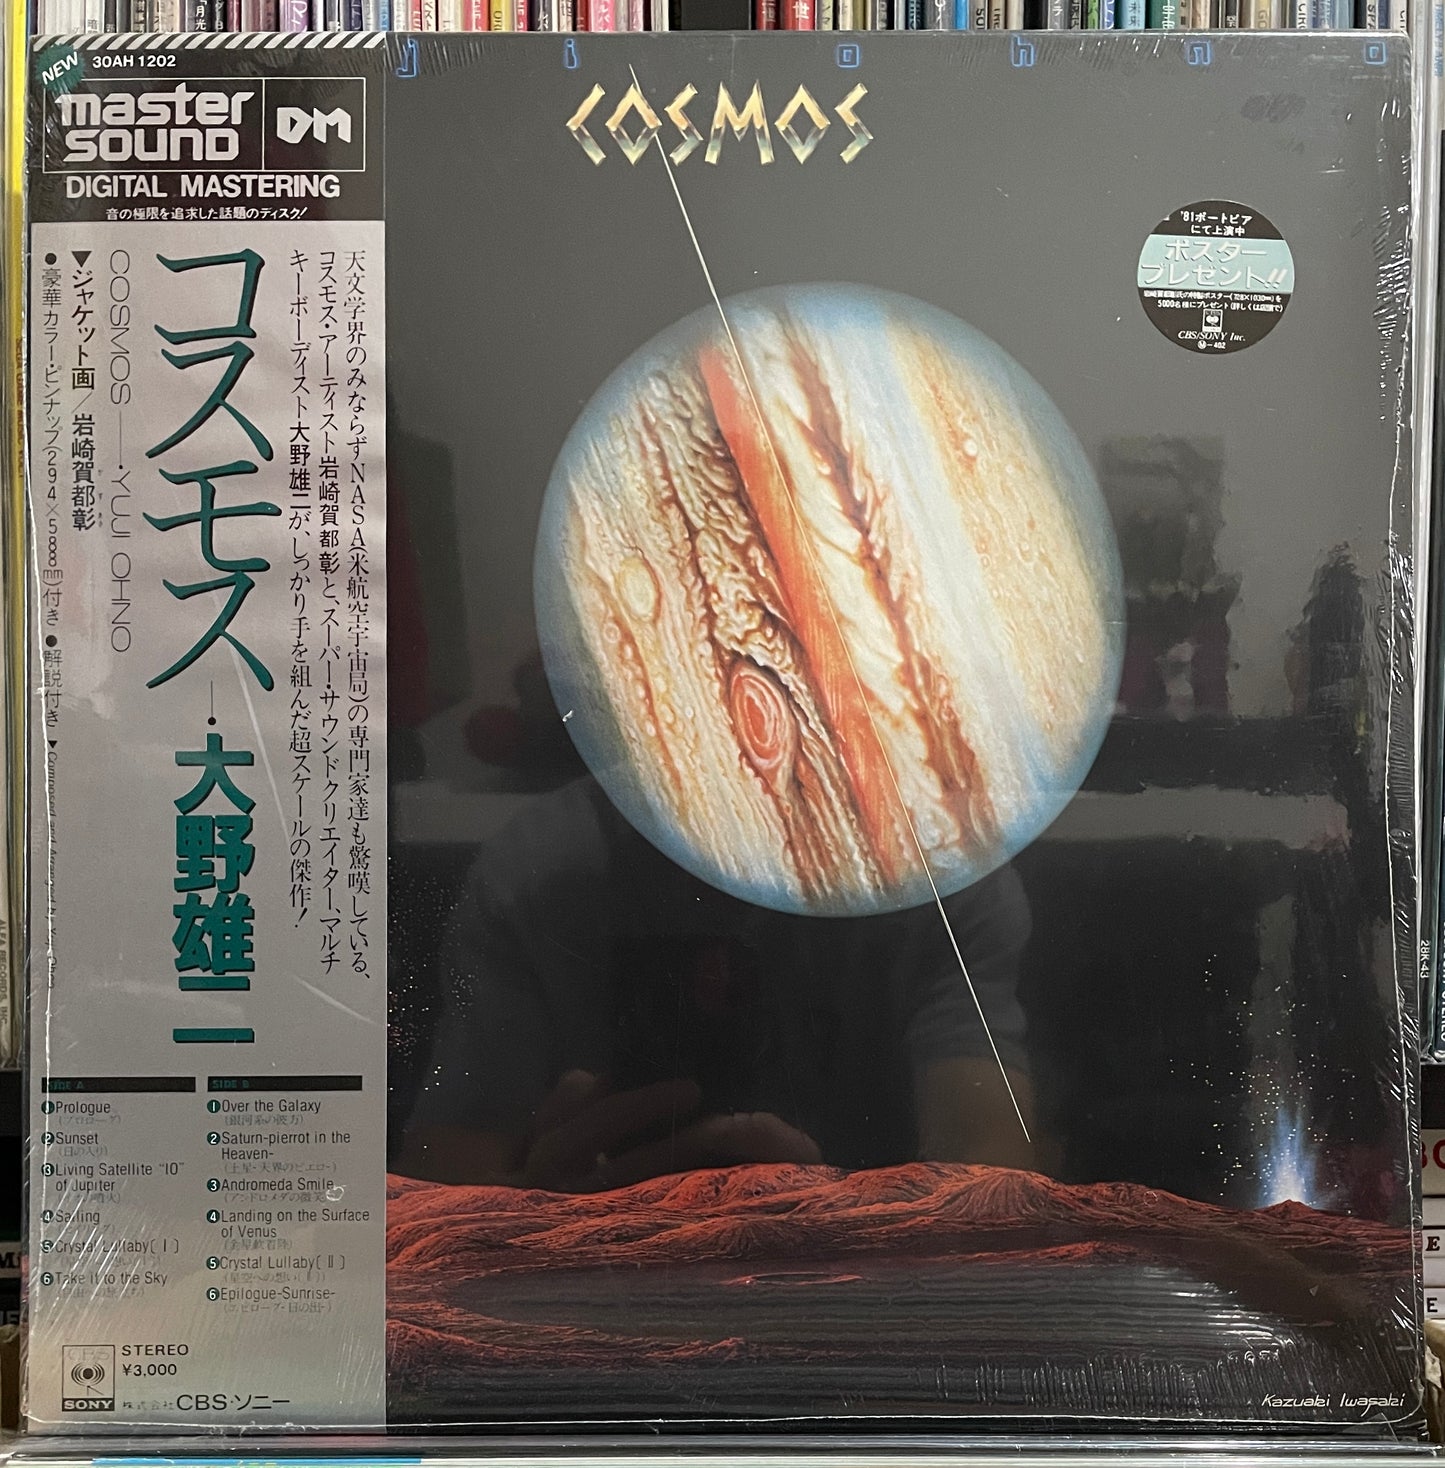 Yuji Ohno “Cosmos” (1981)